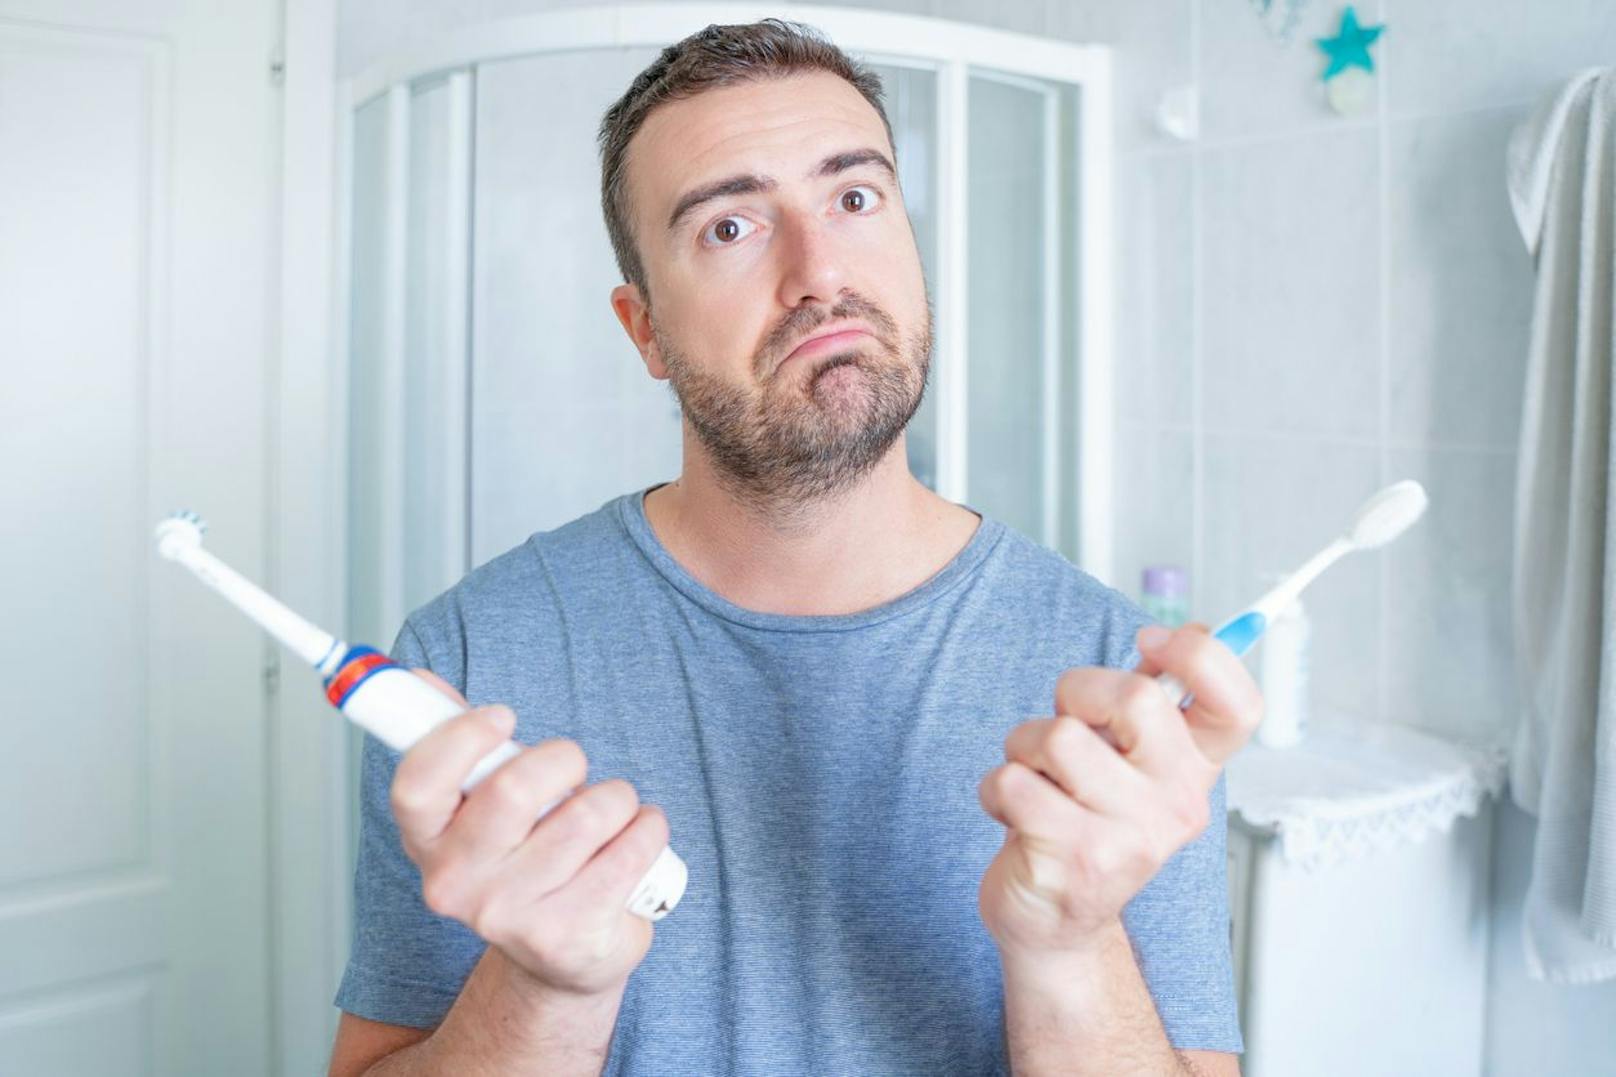 Um deine Zähne nur mit der besten Pflege zu versorgen, solltest du herausfinden, welche Zahnbürste der anderen überlegen ist.